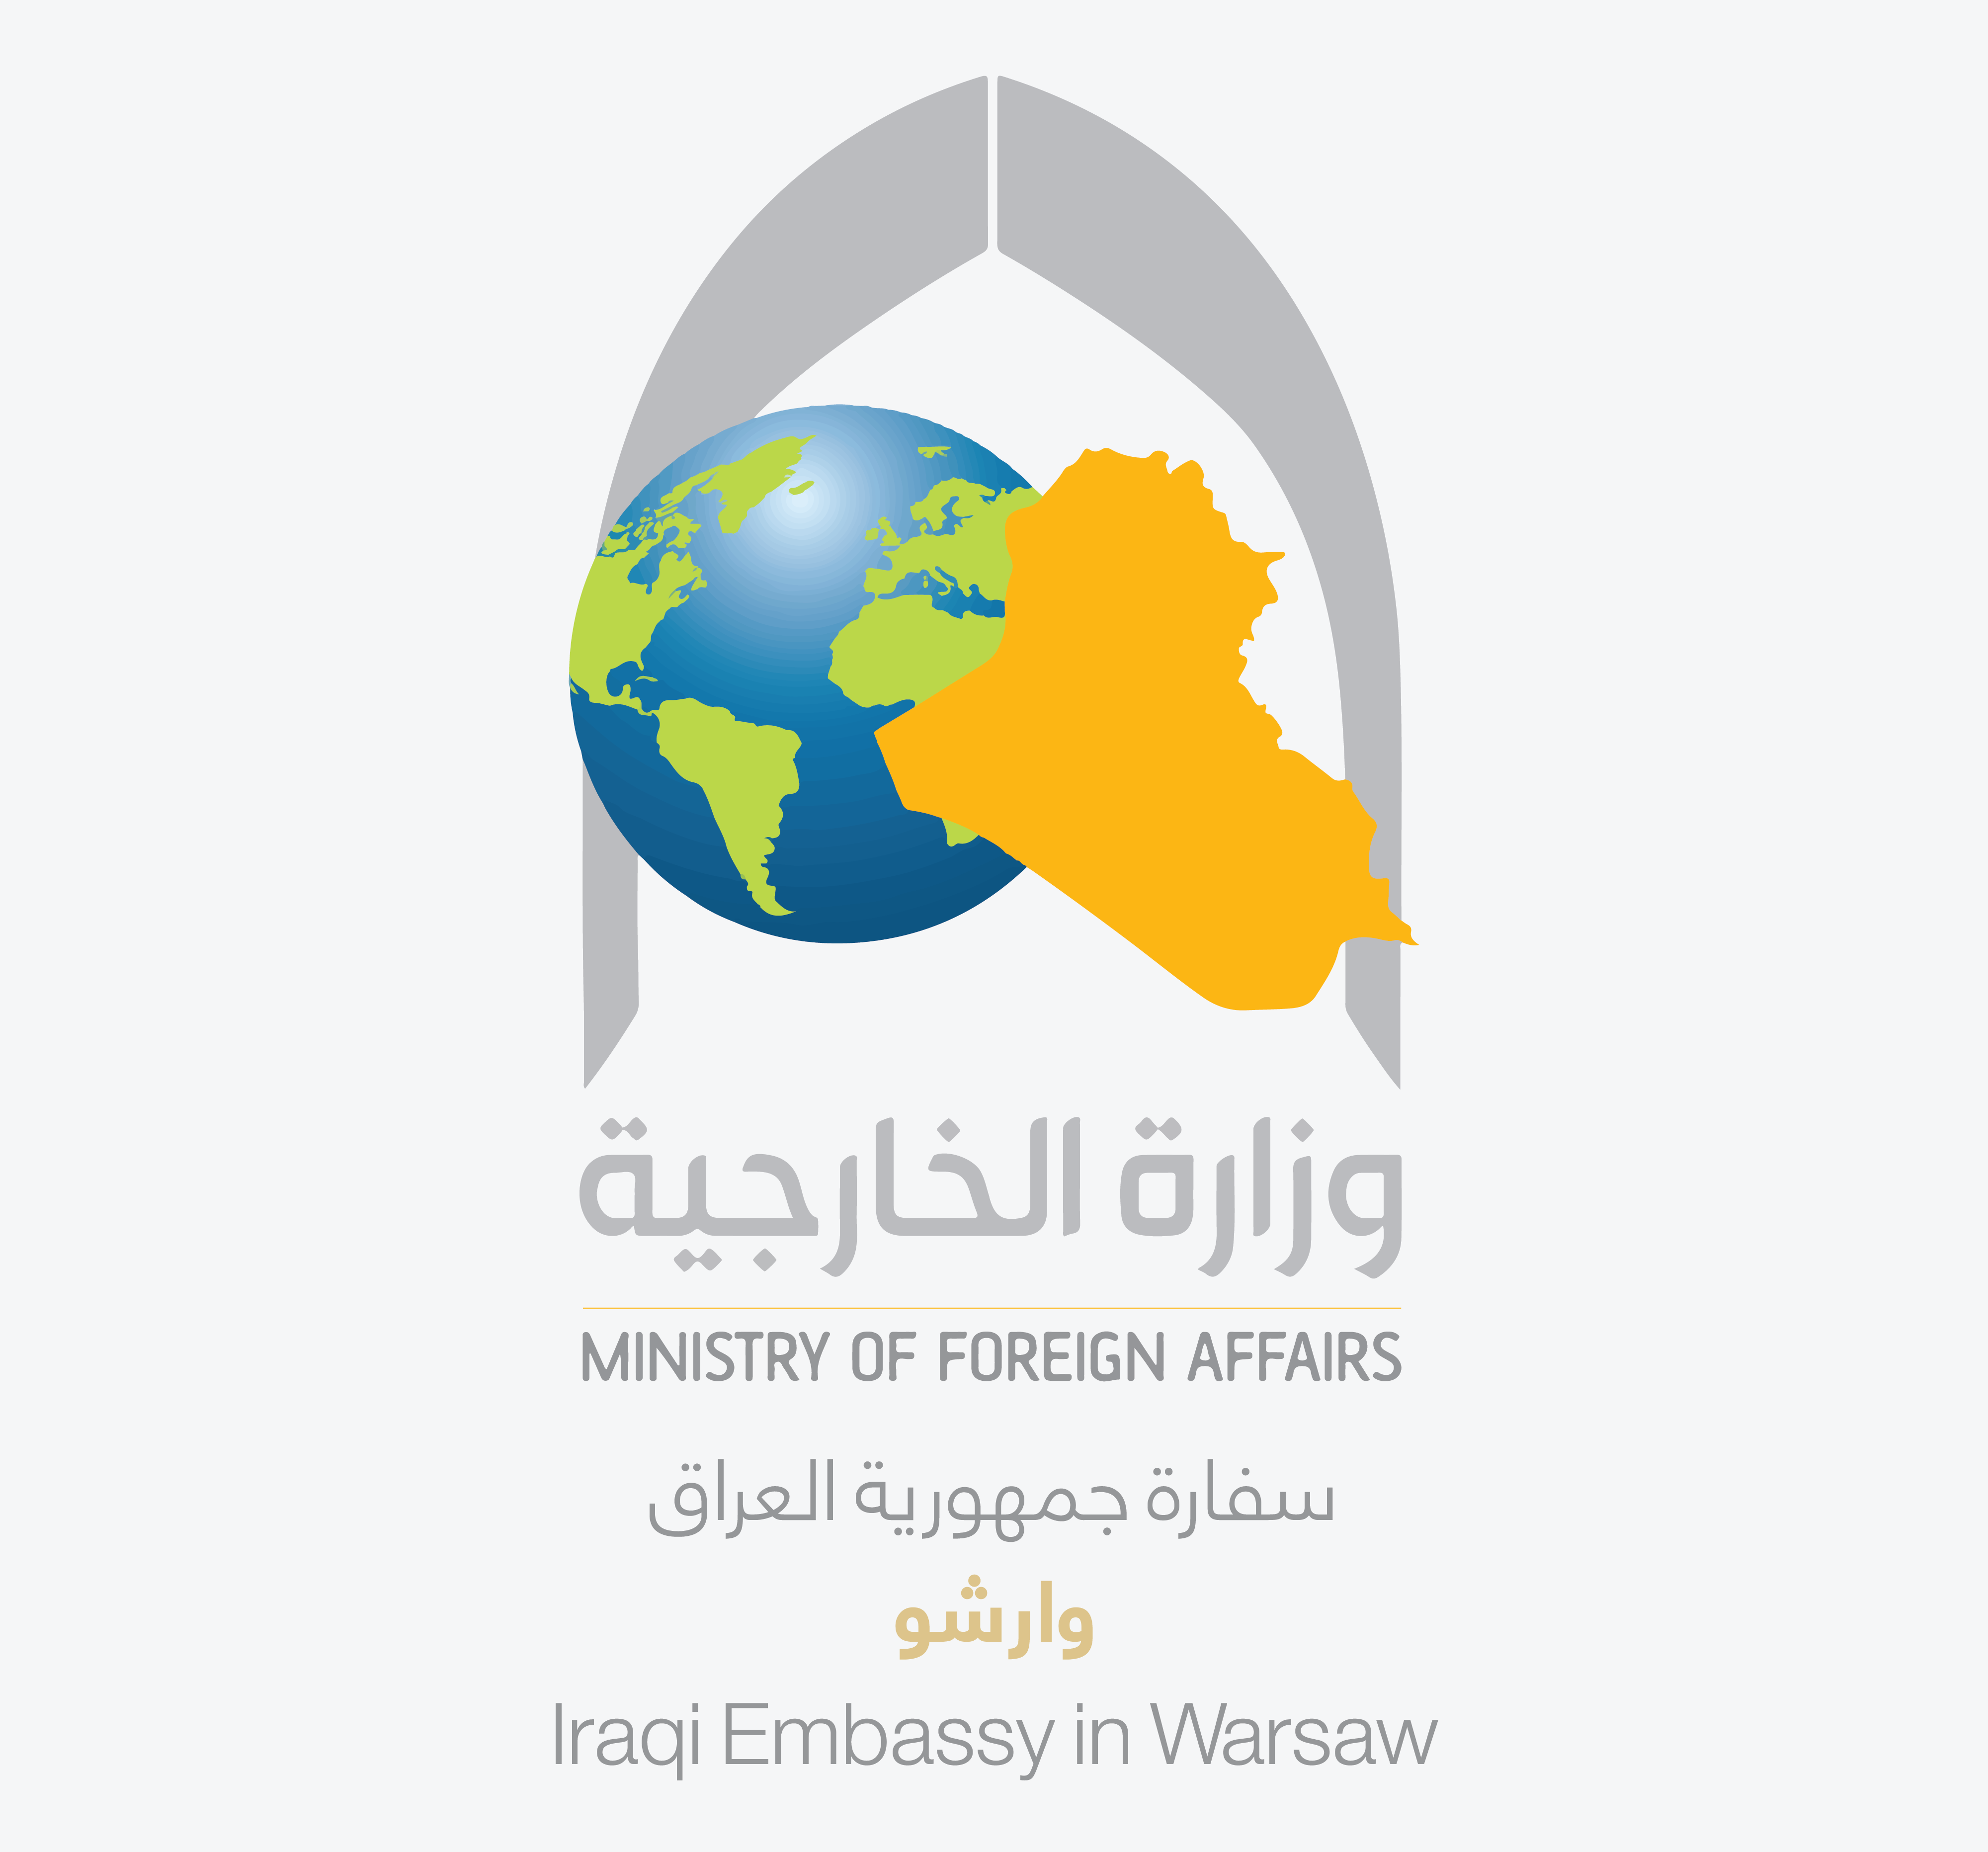 سفارة جمهورية العراق في وارشو